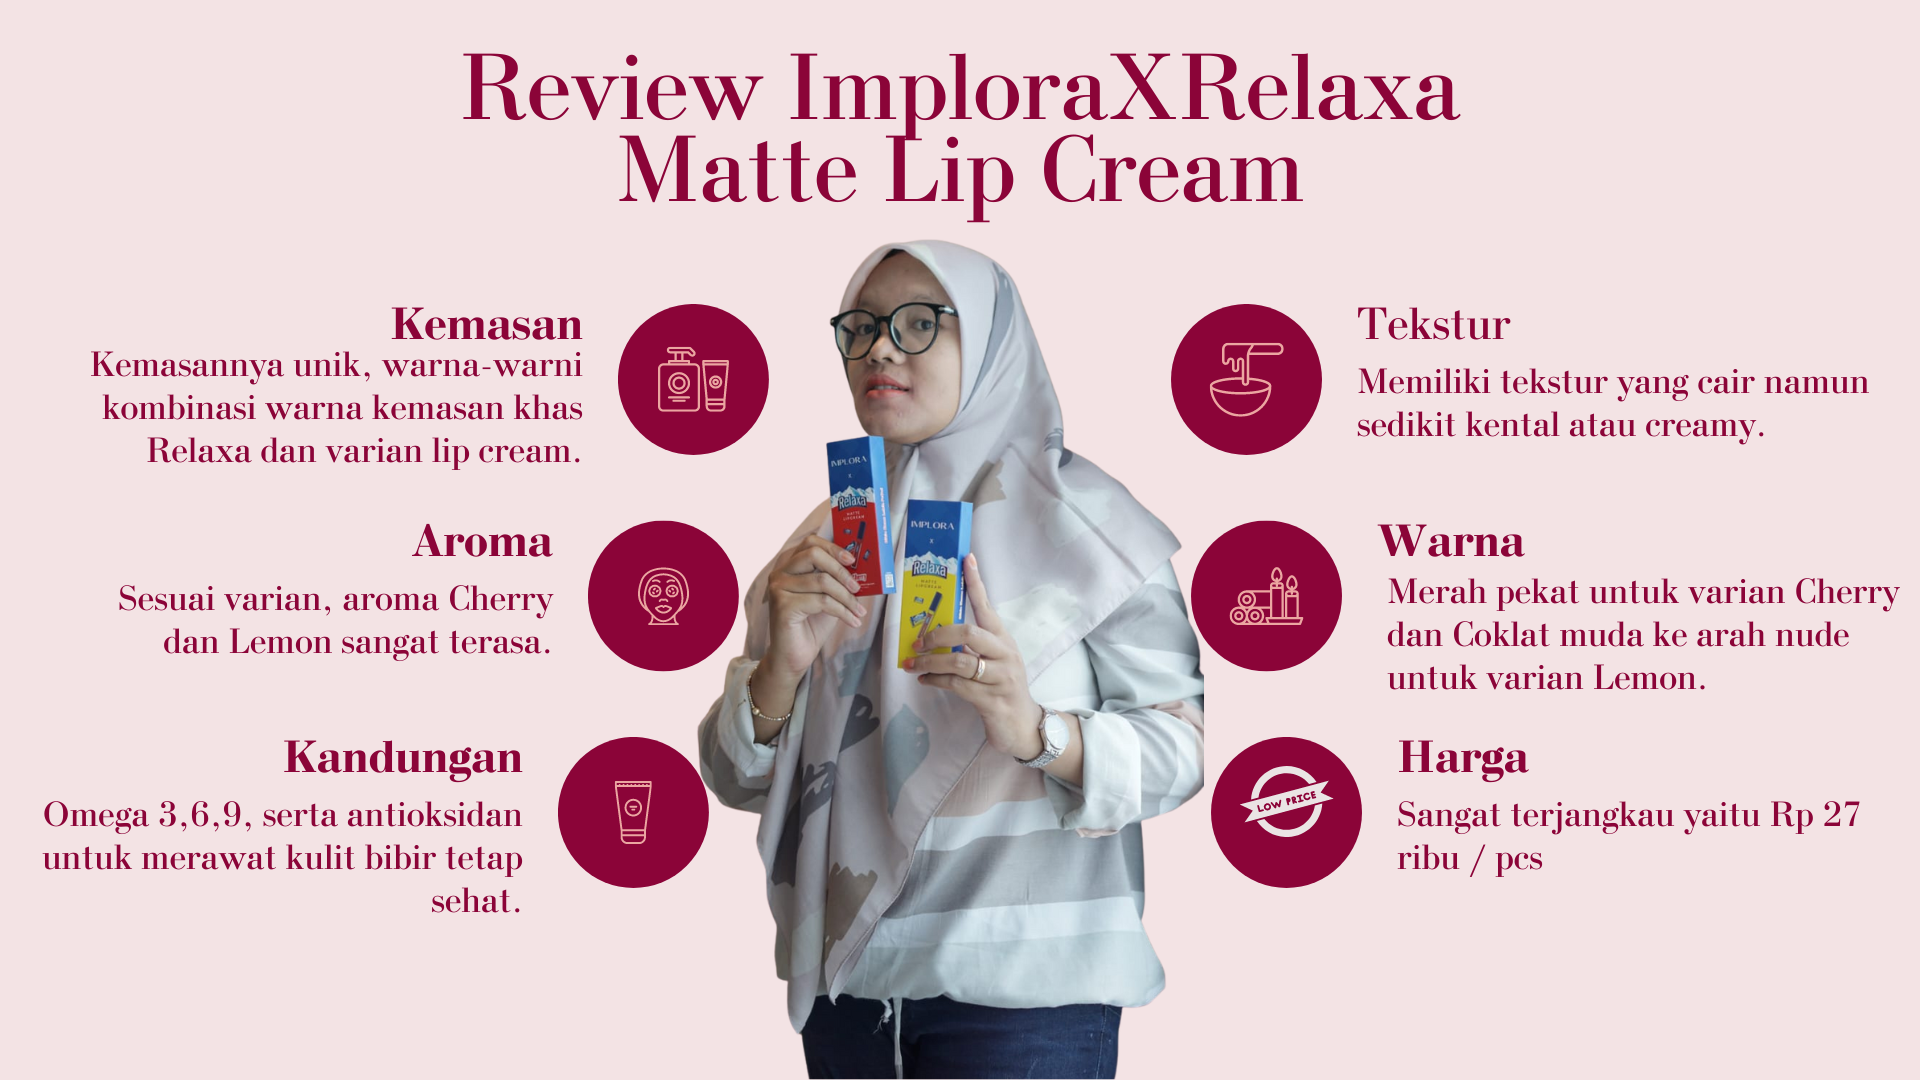 Review ImploraXRelaxa Matte Lip Cream (2)